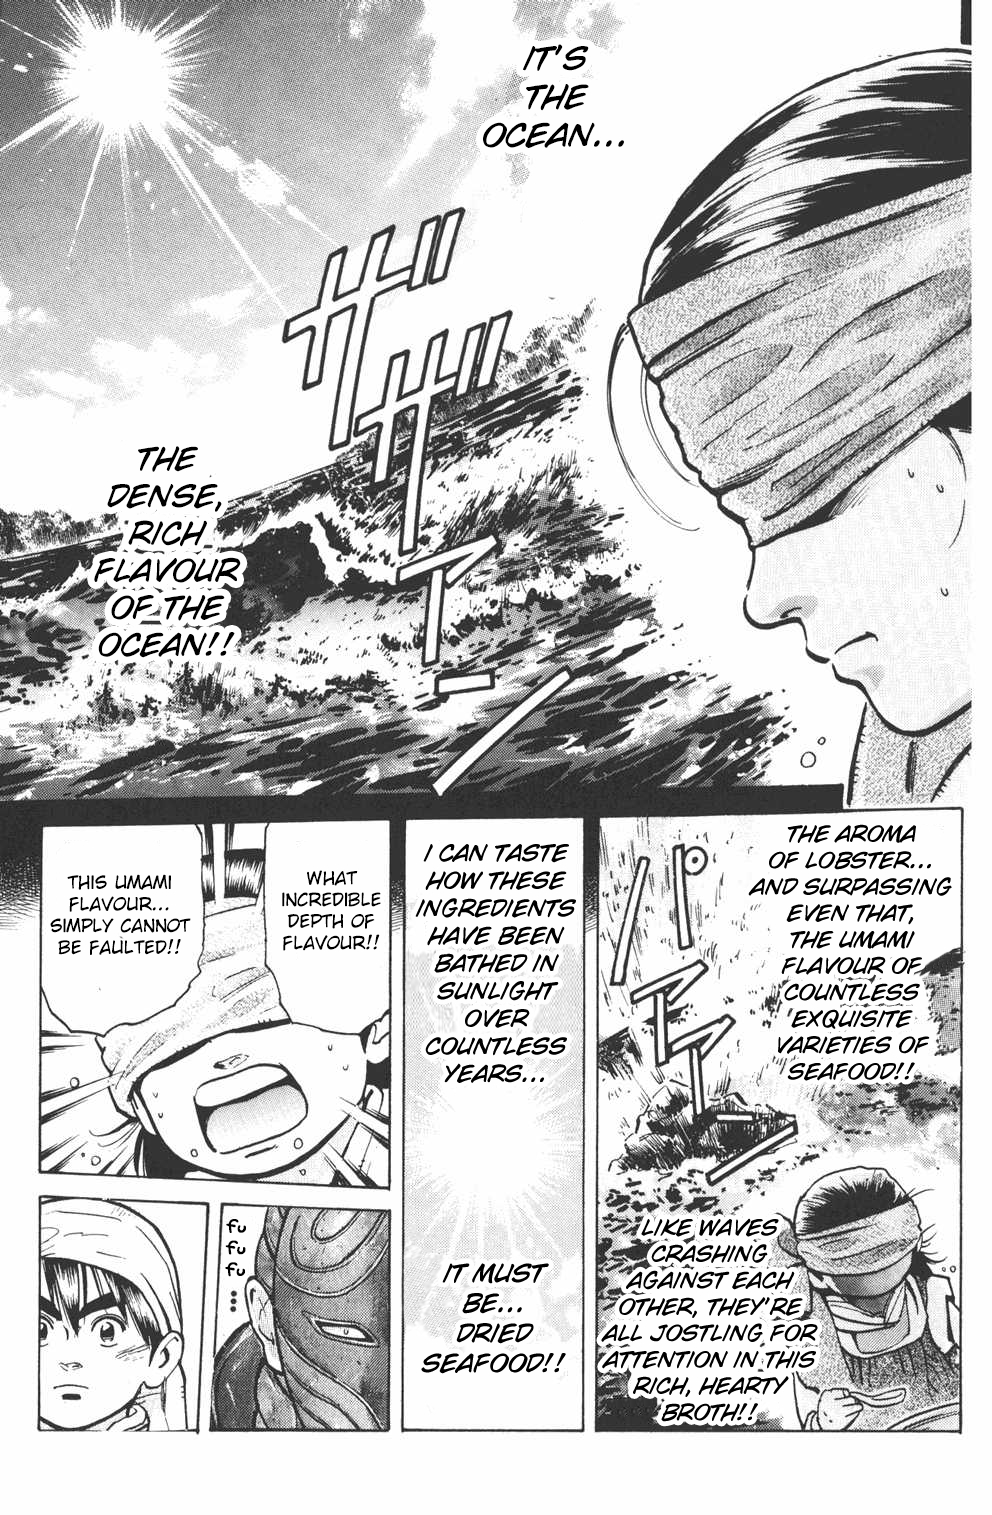 Shin Chuuka Ichiban! Vol. 2 Ch. 11 The Unexpected Judge